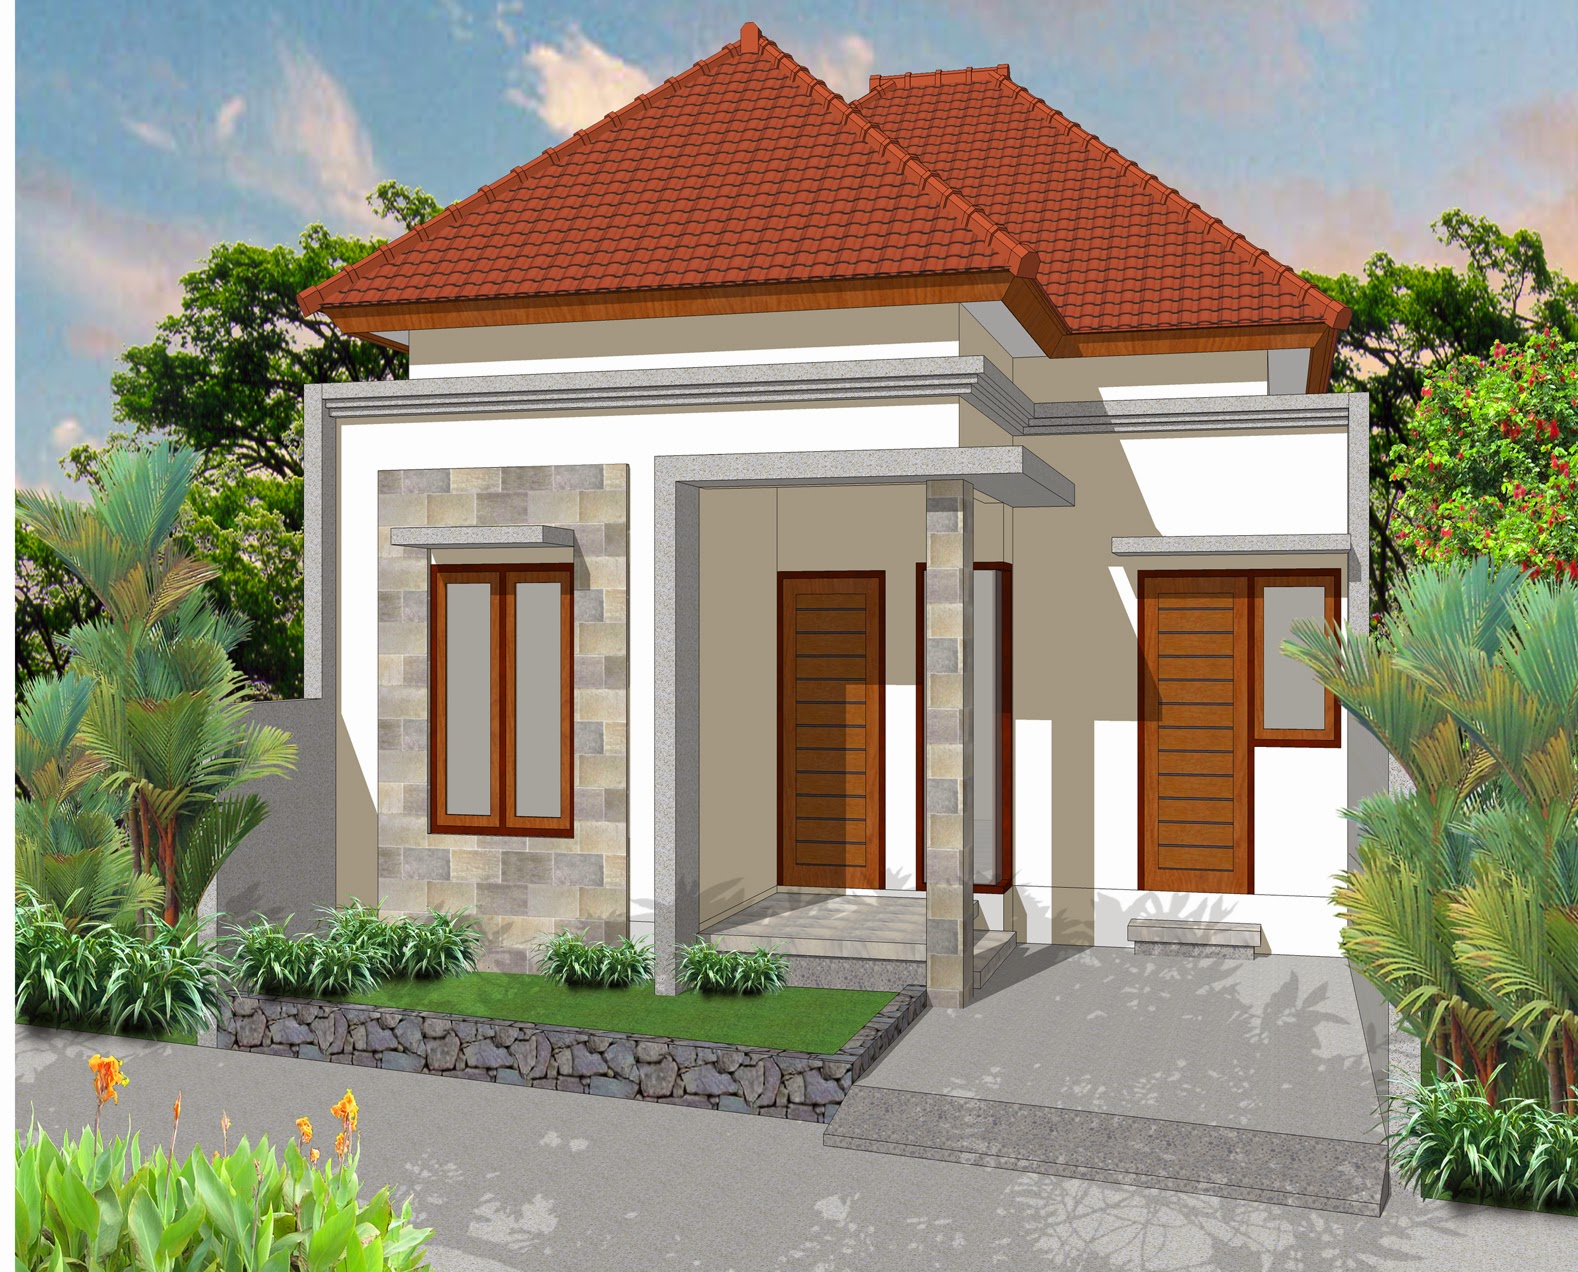  Jual  Rumah  di  Denpasar Barat Padang Sambian Jl Buana 